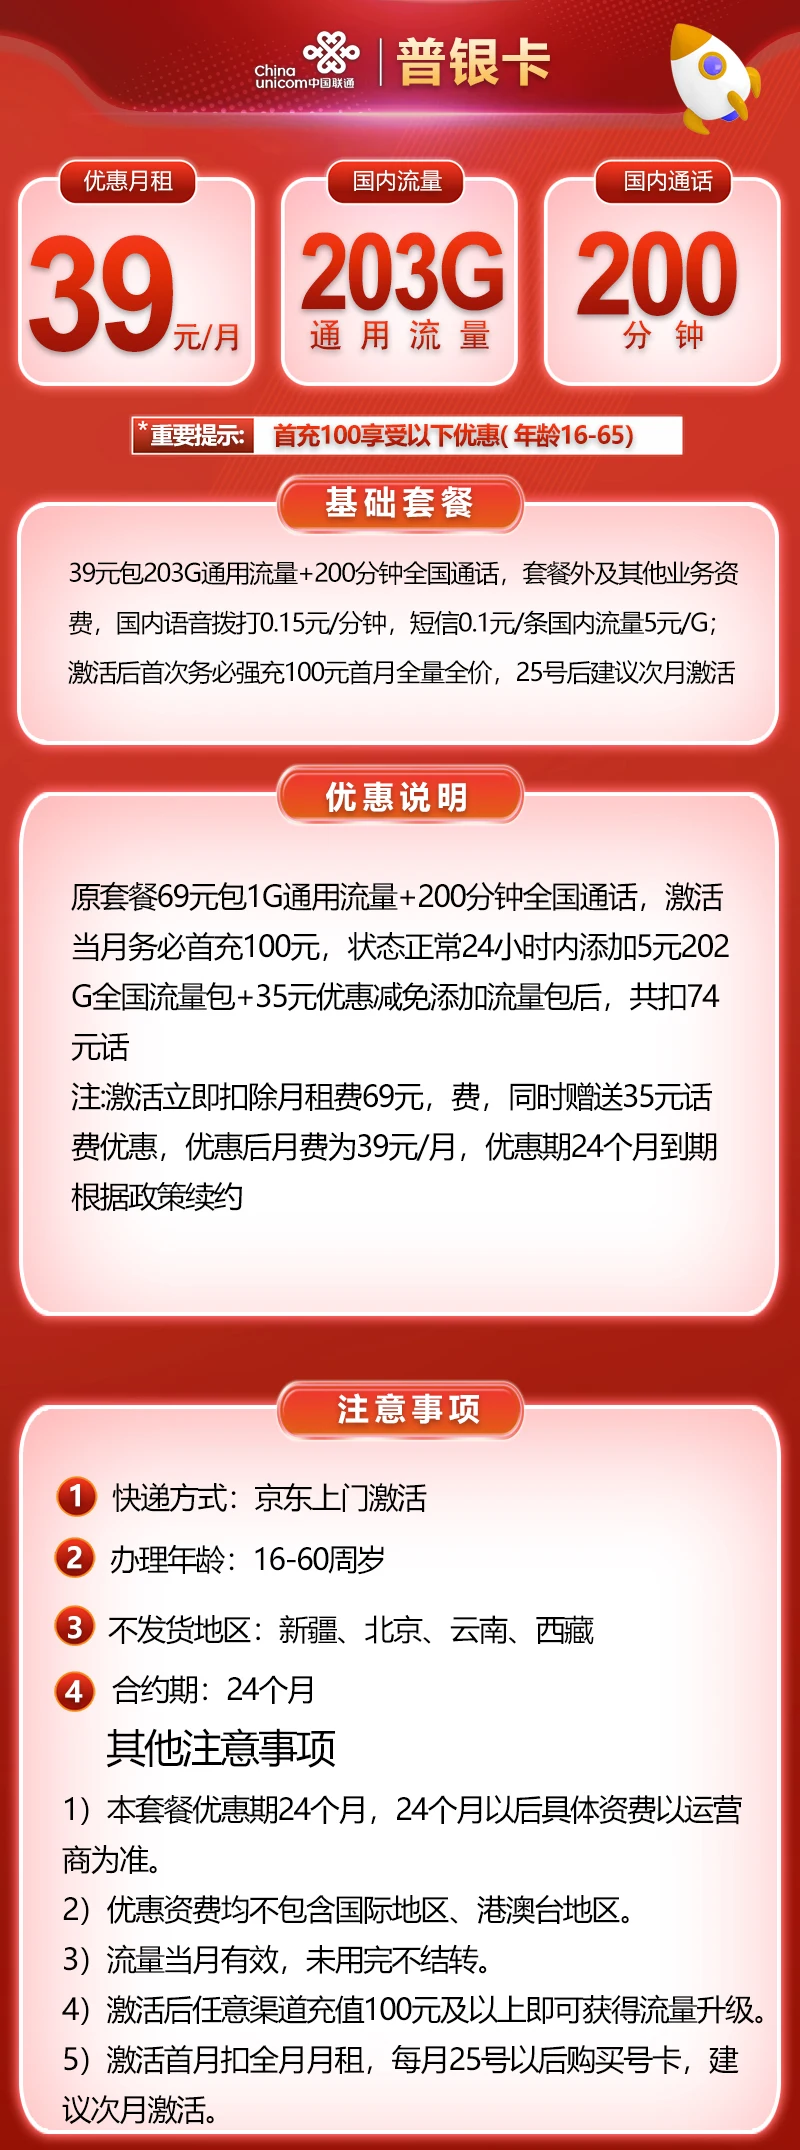 中国联通普银卡39元203G+200分钟通话套餐介绍,通用纯流量卡!